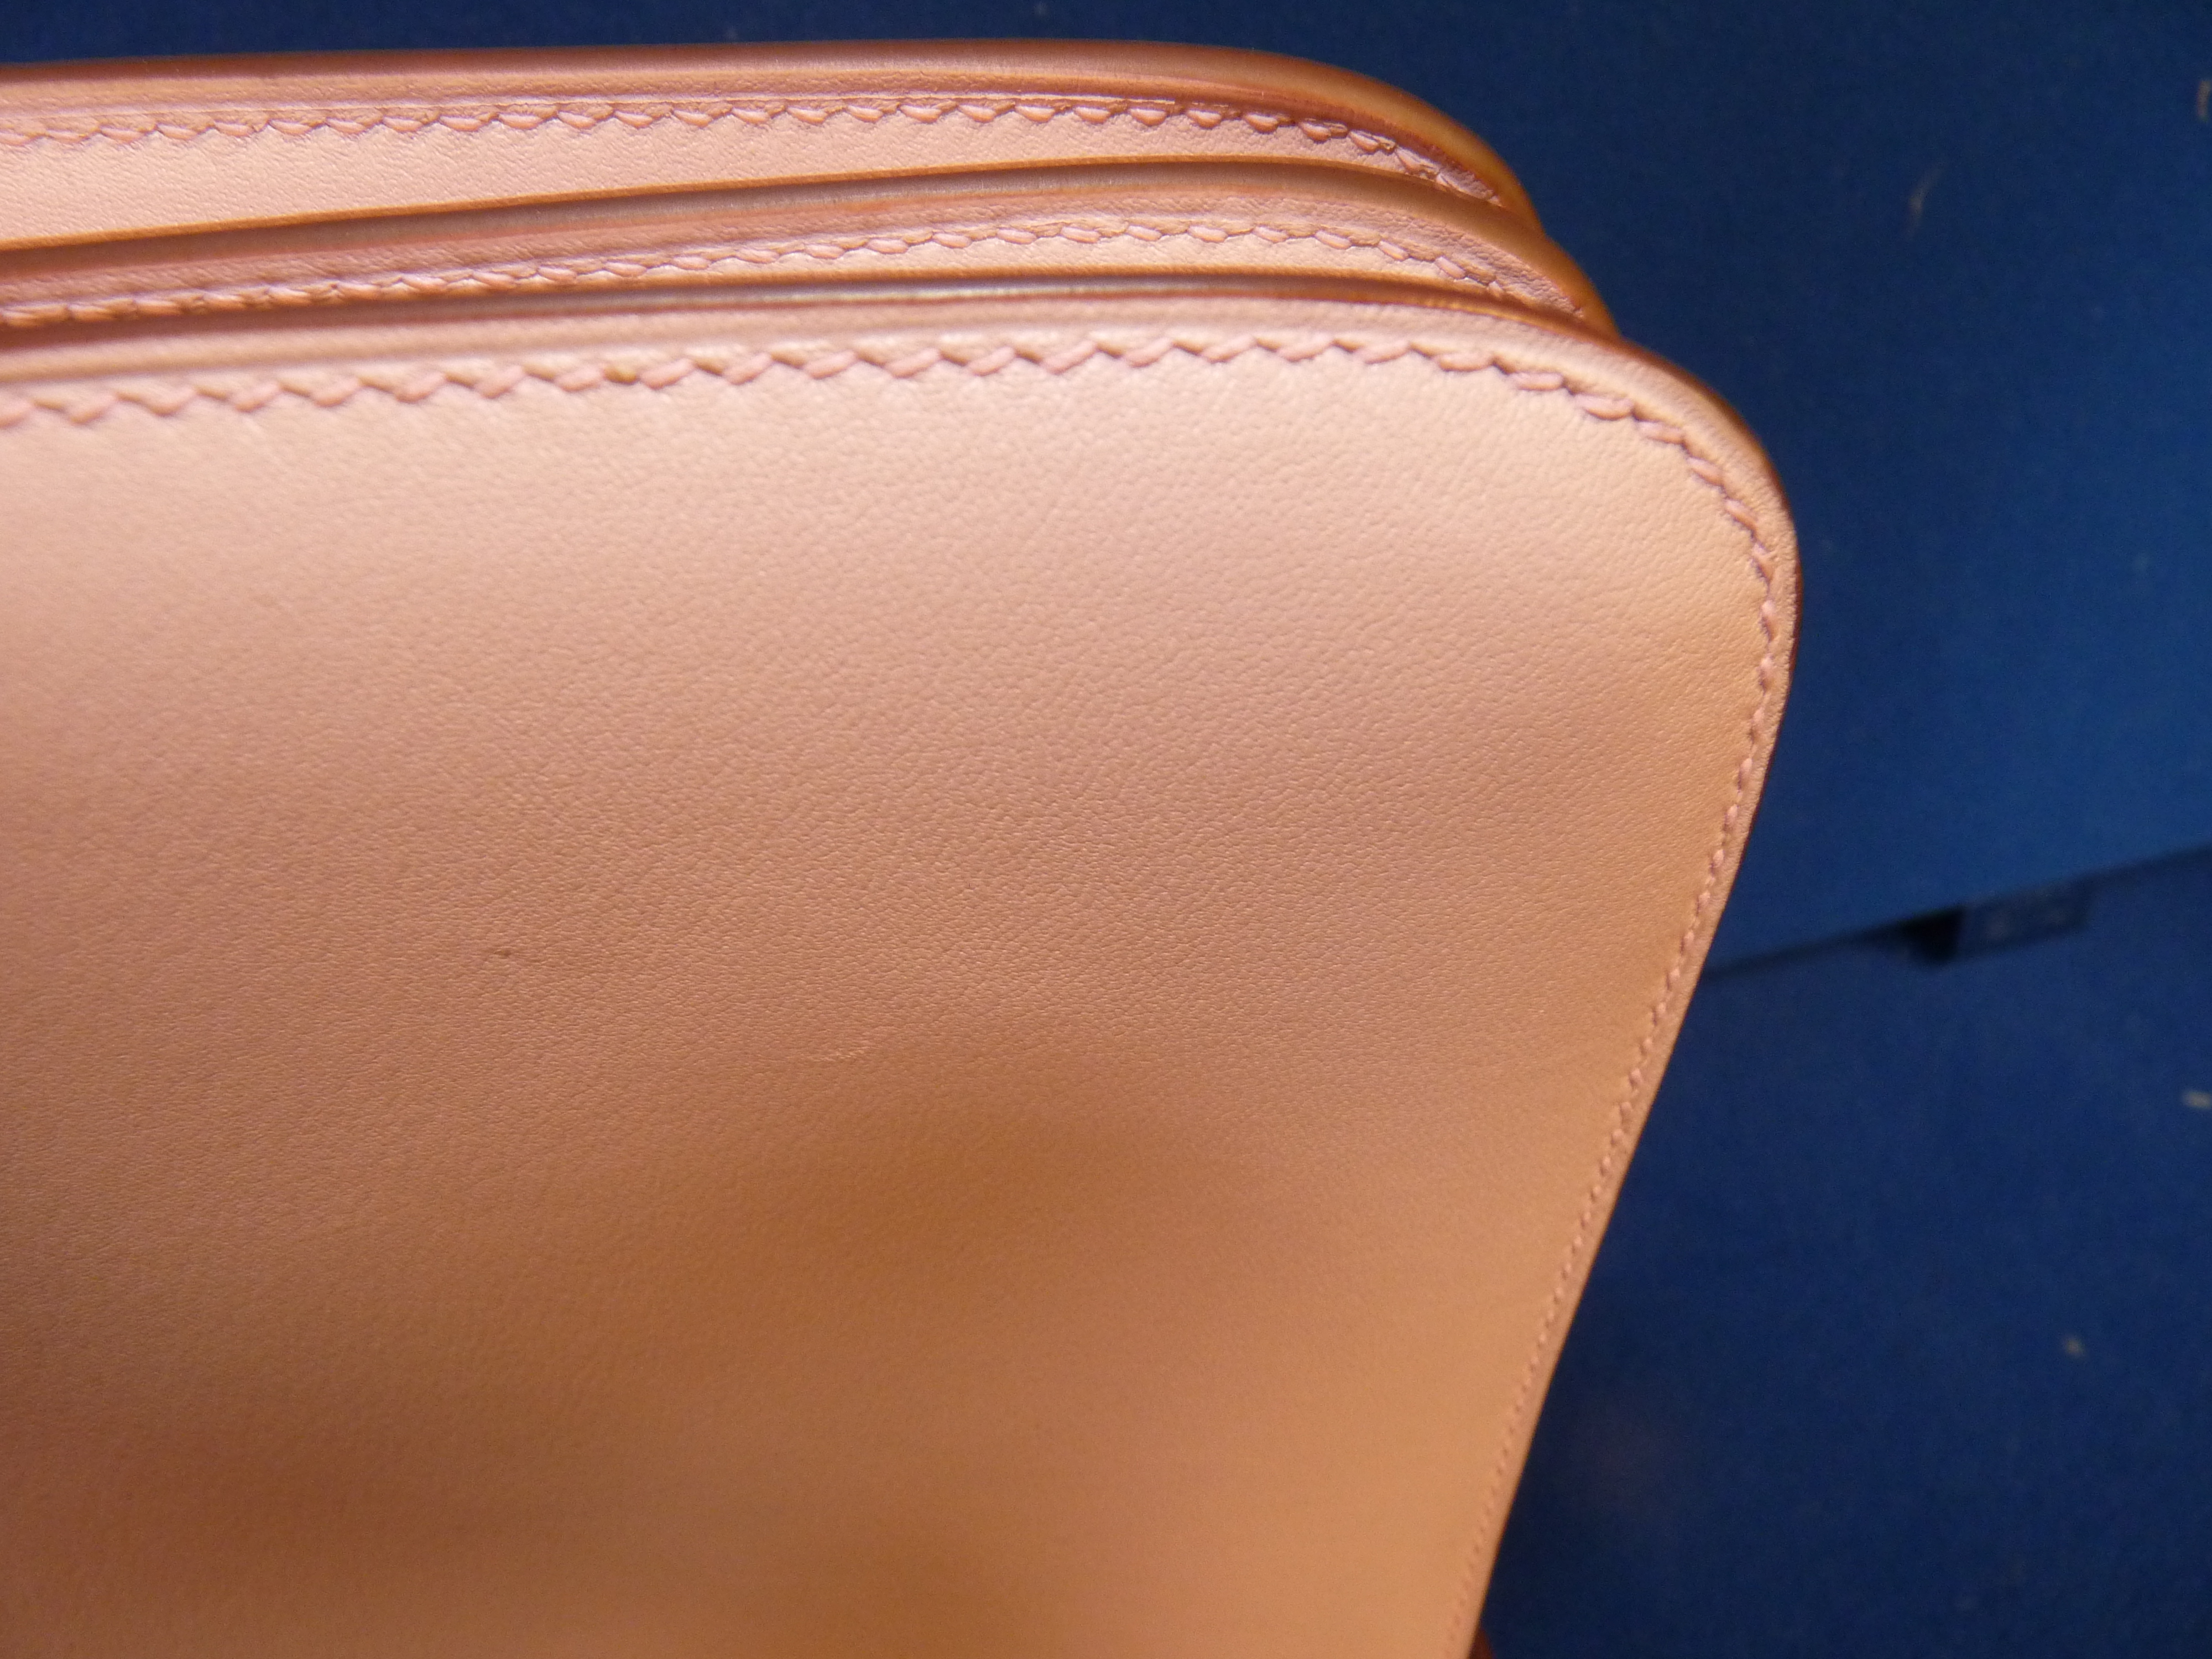 Boxed Hermes Pink Ladies Handbag - Image 6 of 14